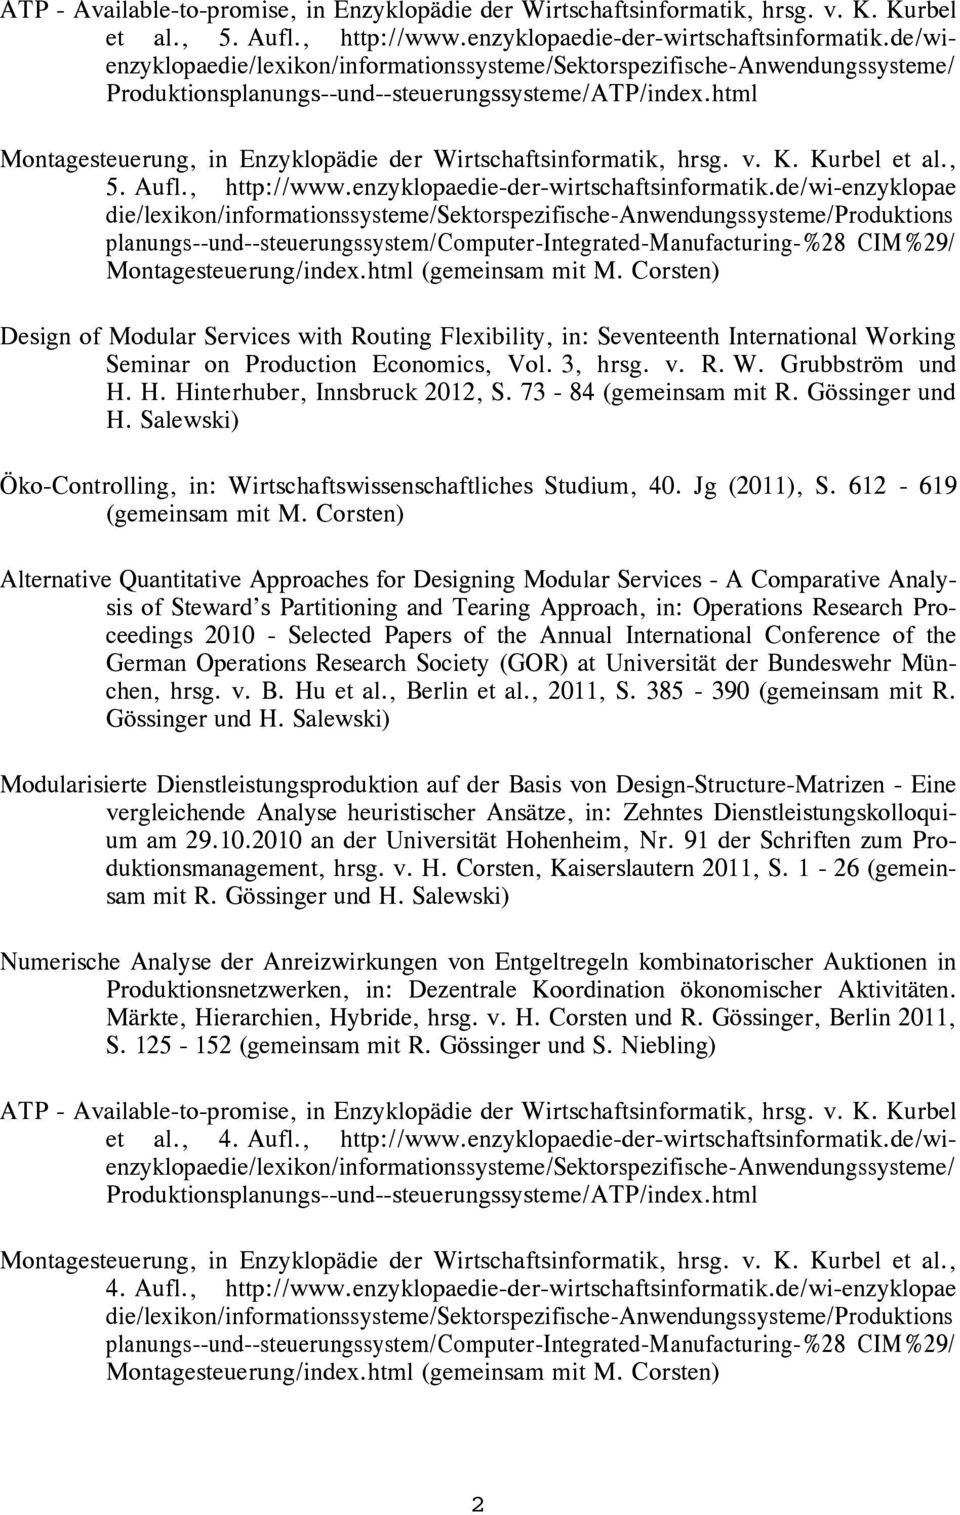 html Montagesteuerung, in Enzyklopädie der Wirtschaftsinformatik, hrsg. v. K. Kurbel et al., 5. Aufl., http://www.enzyklopaedie-der-wirtschaftsinformatik.